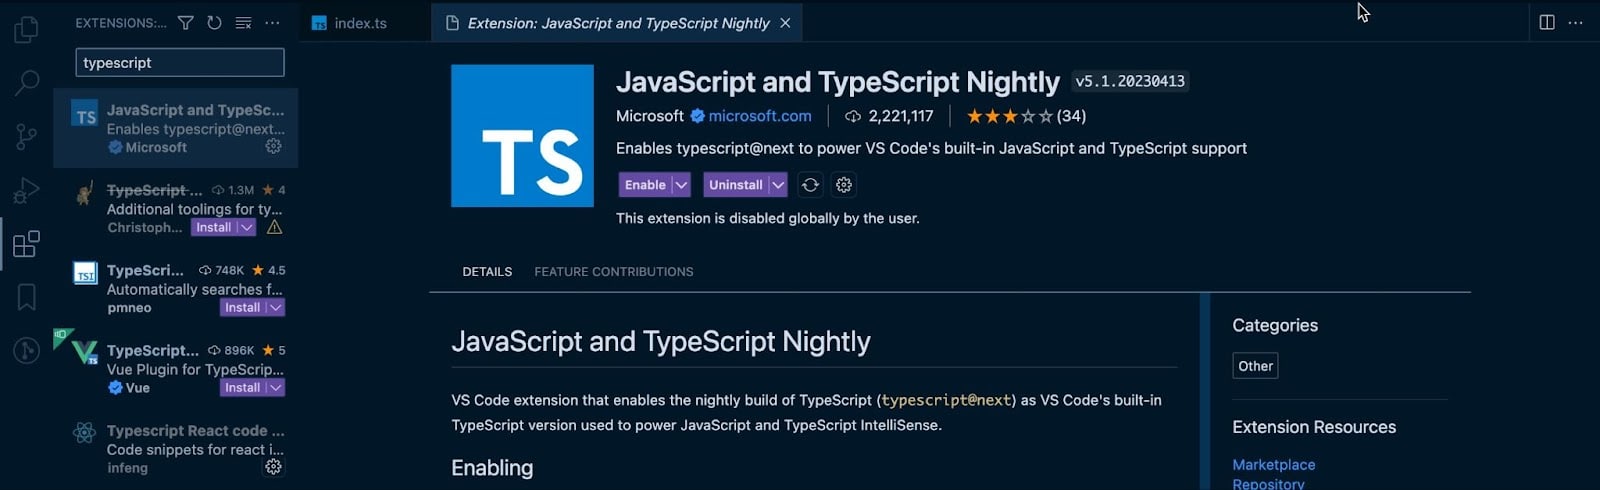 Extensão TypeScript do VS Code